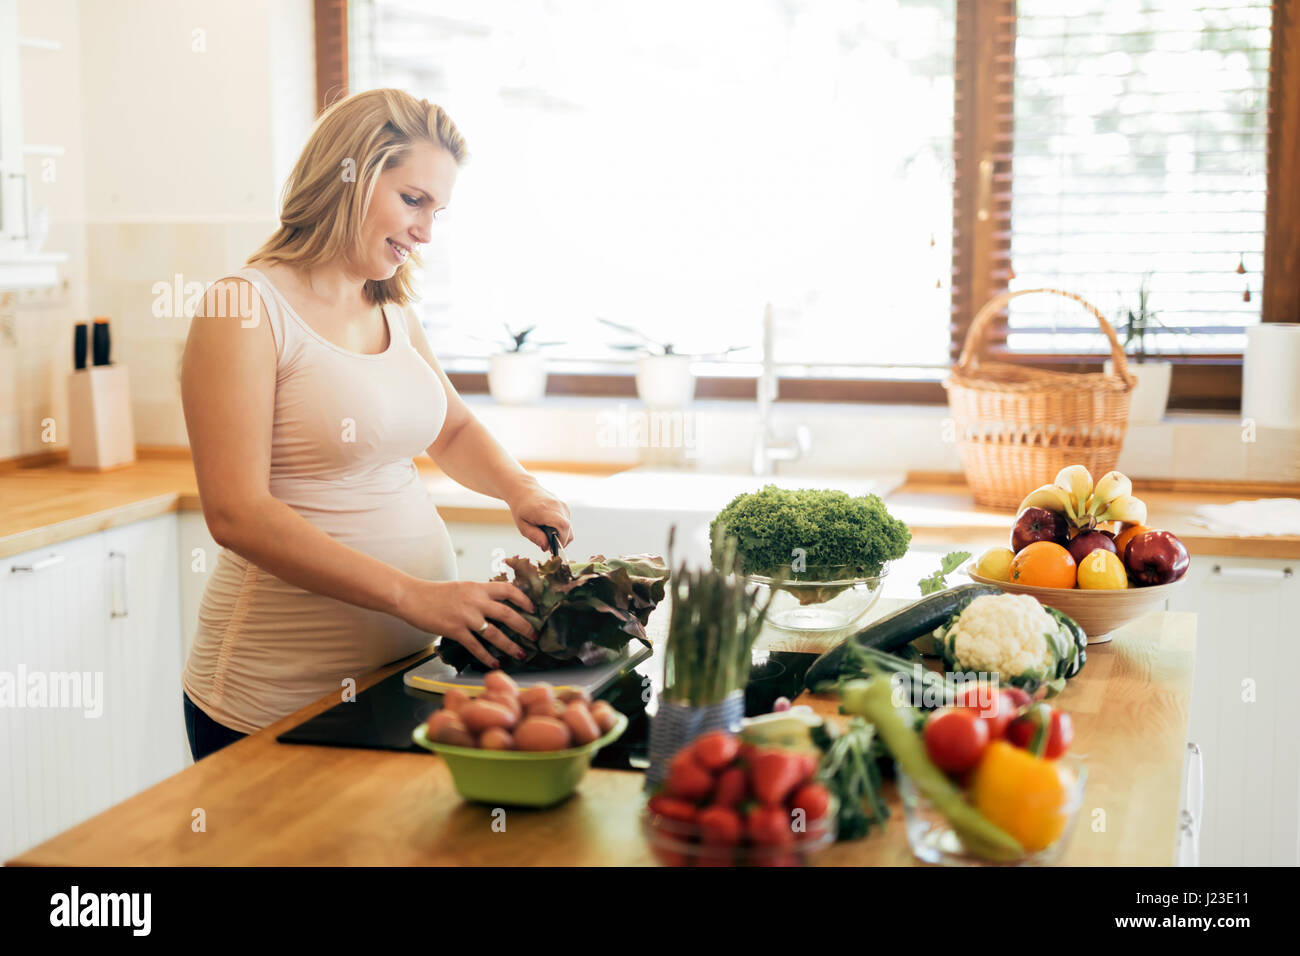 Belle femme enceinte, la préparation de repas sur l'île de cuisine à partir de produits frais Banque D'Images